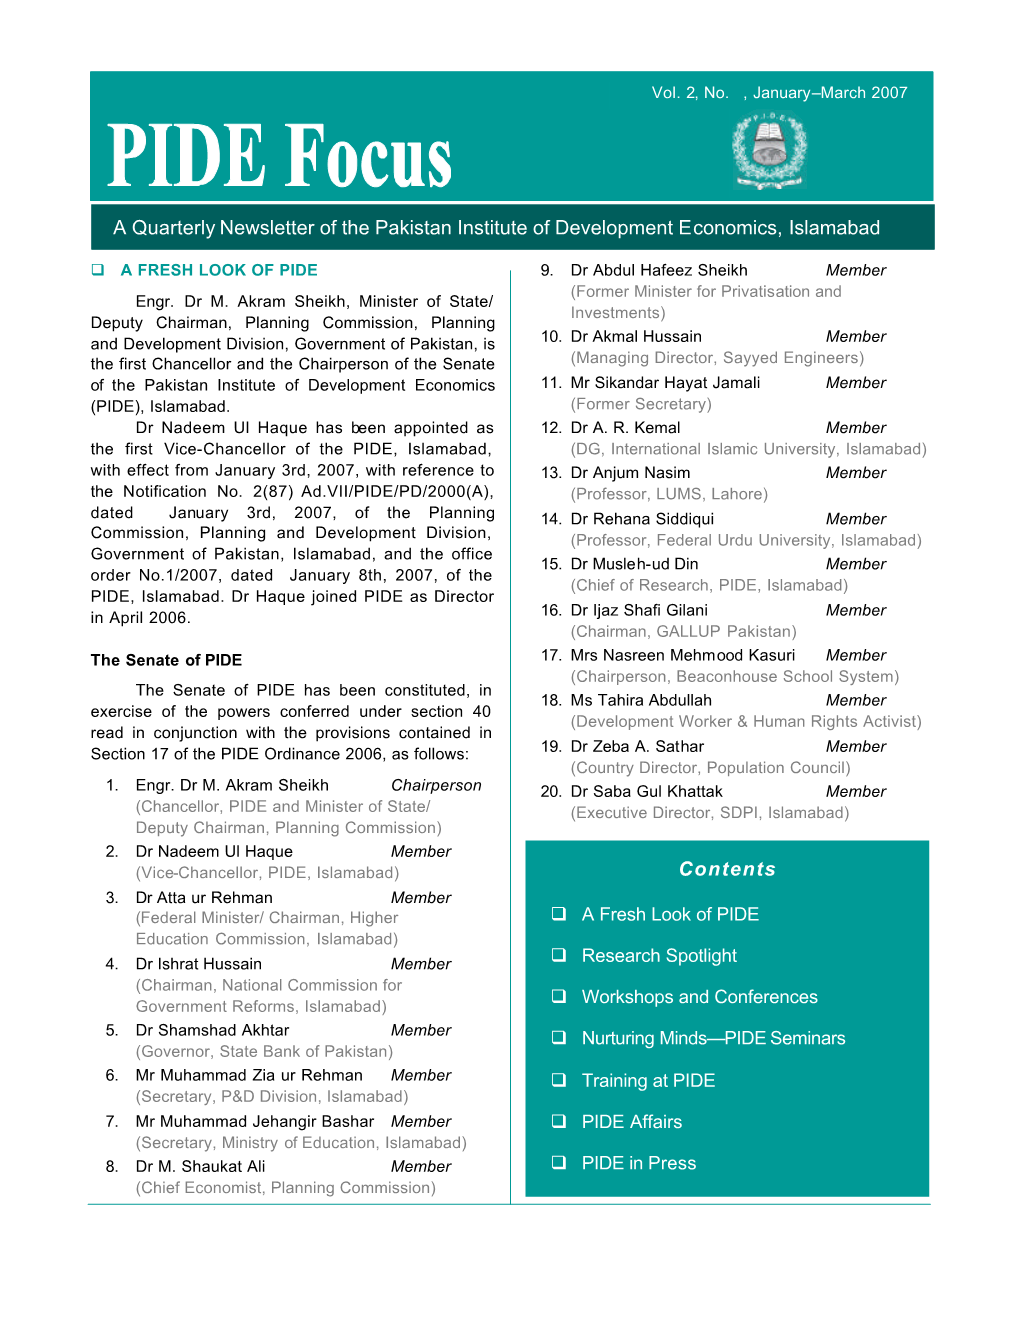 PIDE Focus Vol 2 No 1